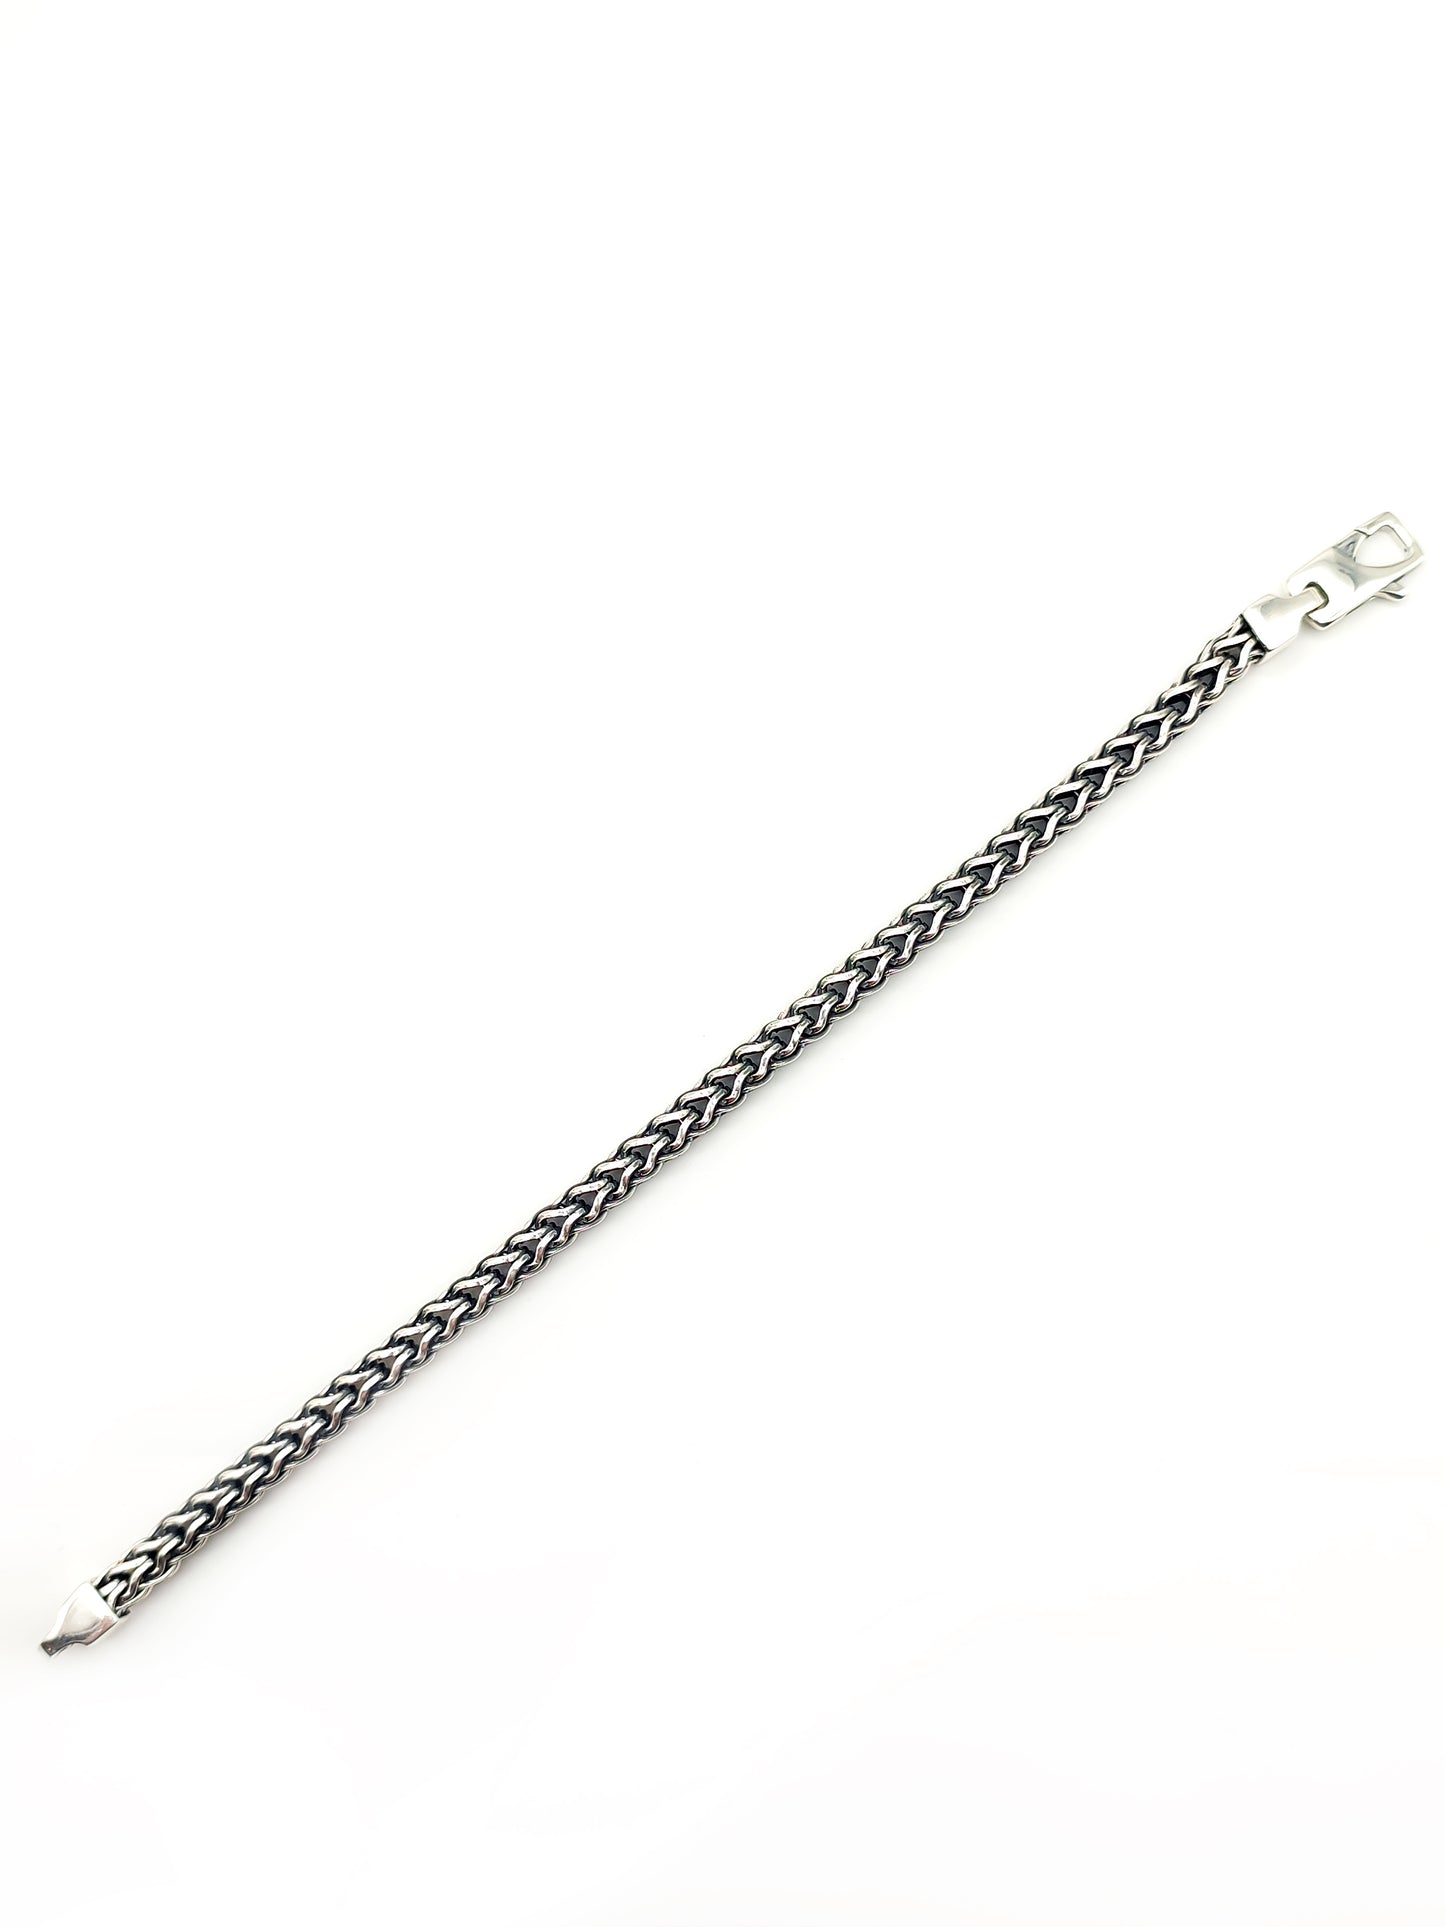 Spike chain bracelet